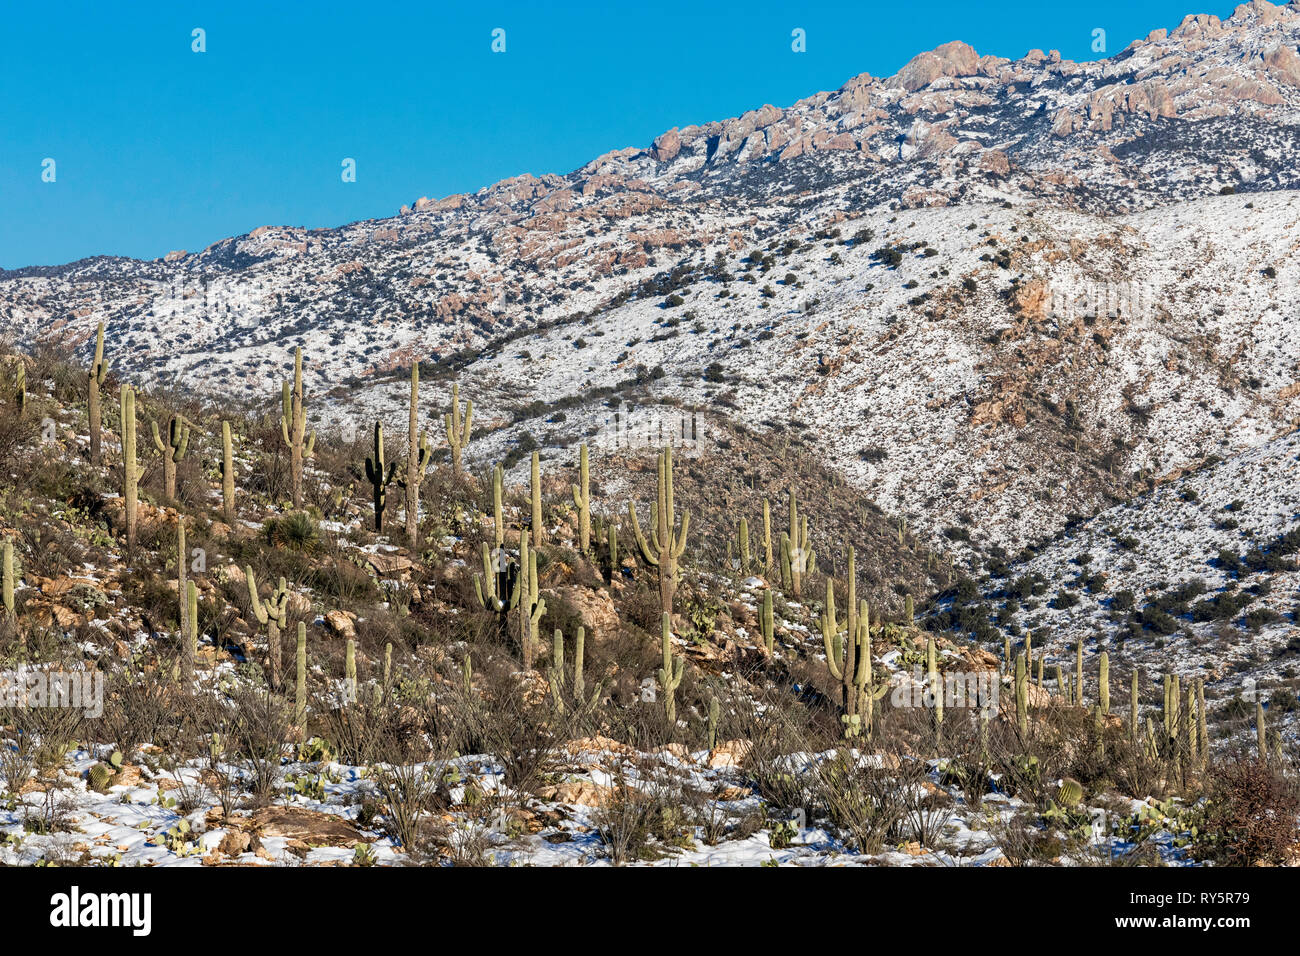 Rincon montagnes avec de la neige fraîche, cactus Saguaro (Carnegiea gigantea) au premier plan, Redington Pass, Tucson, Arizona Banque D'Images